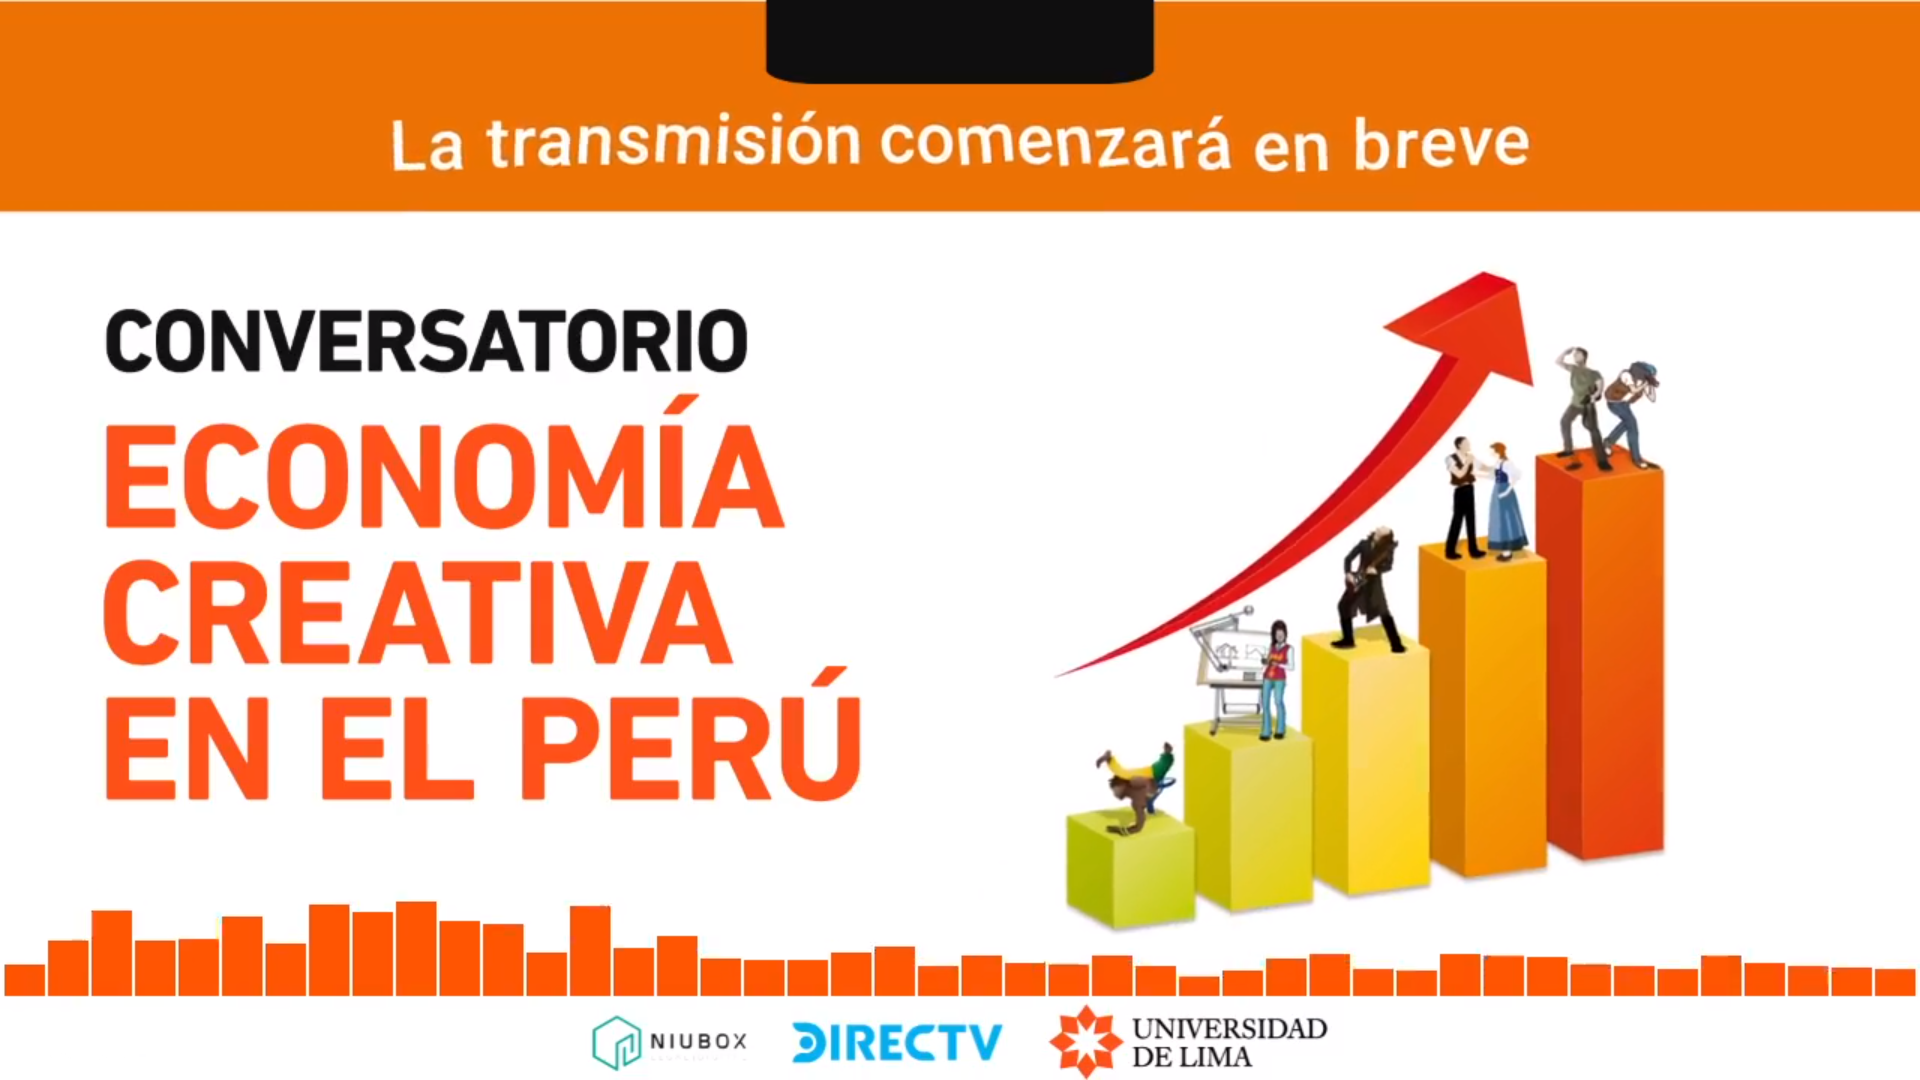 “La economía creativa en el Perú”: Cuatro propuestas clave para impulsar su desarrollo en el país